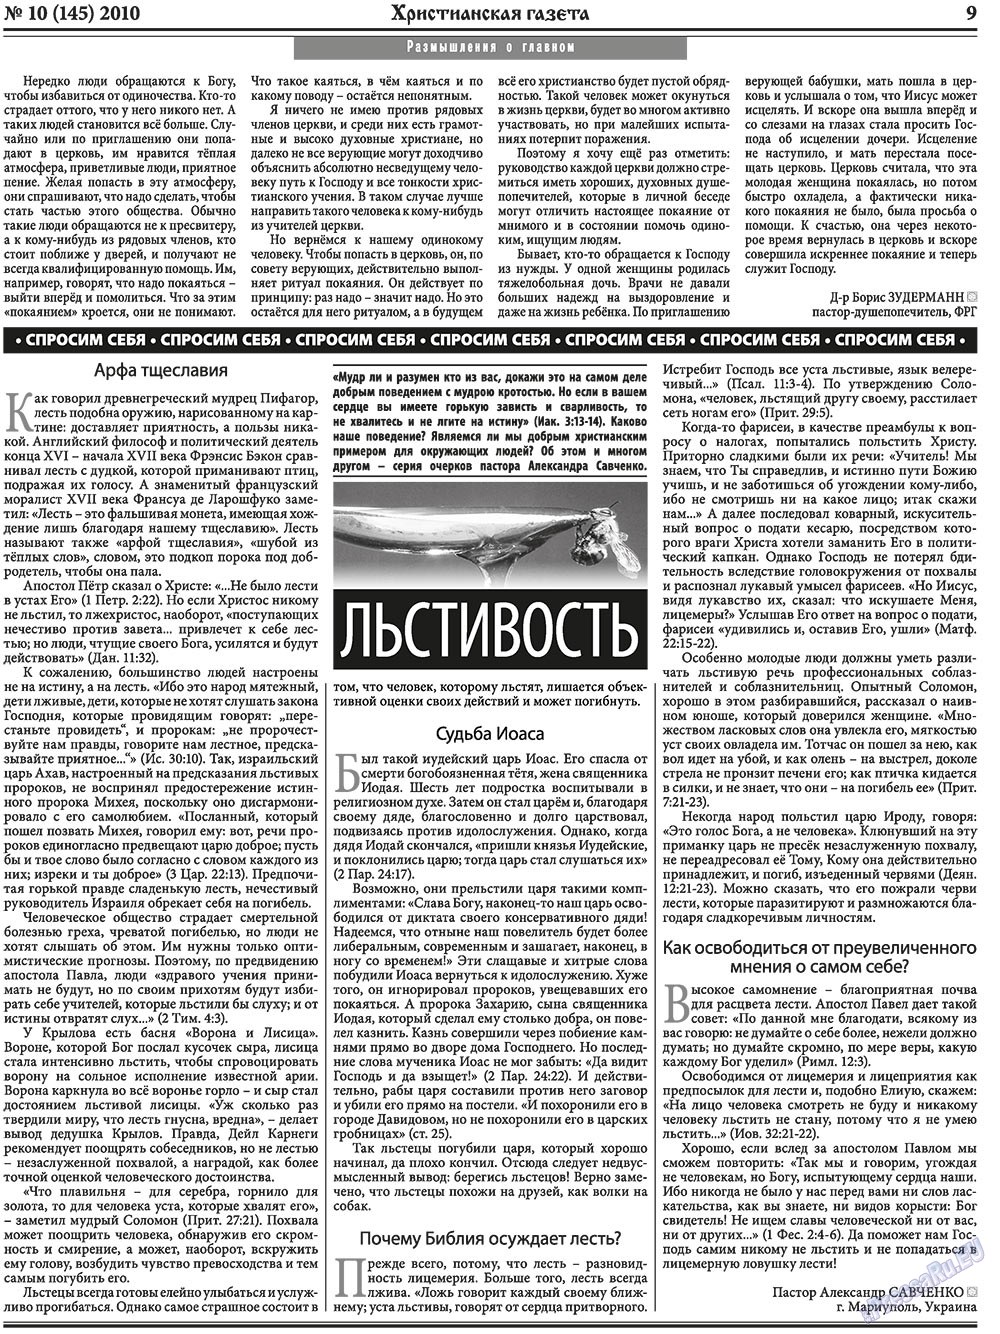 Христианская газета, газета. 2010 №10 стр.9